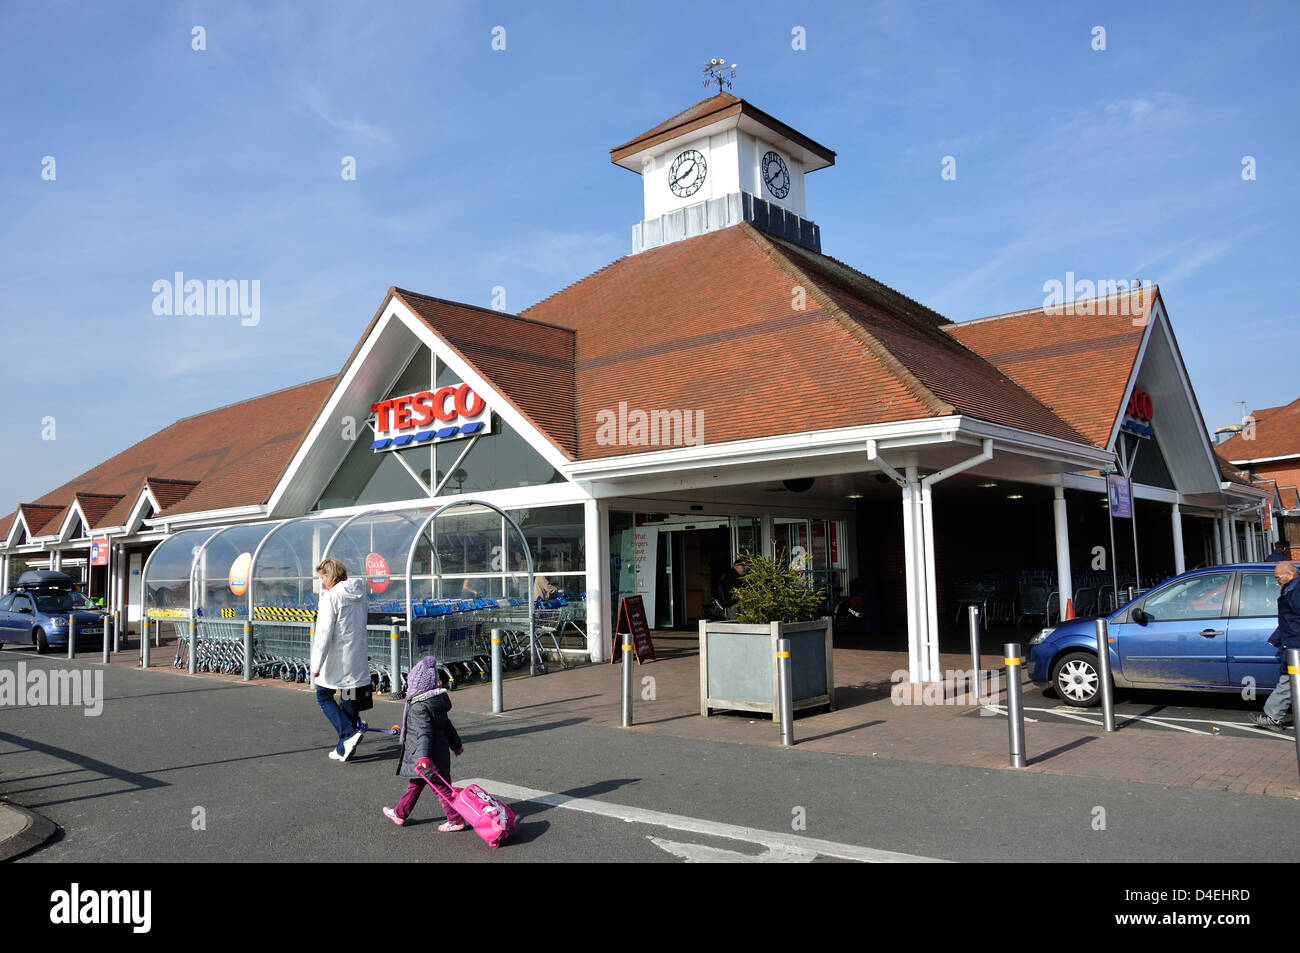 Tesco supermarket, High Street, Feltham, London Borough of Hounslow, Greater London, England, United Kingdom Stock Photo